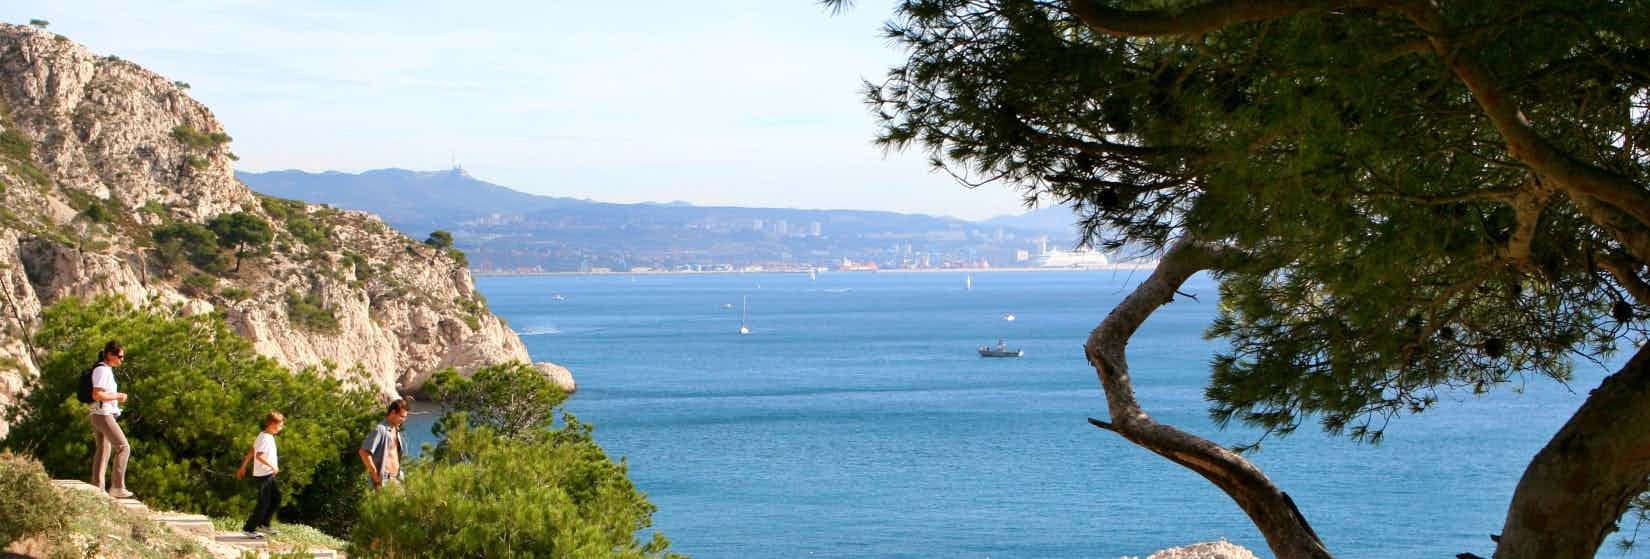 Camping an der Côte d'Azur am Meer